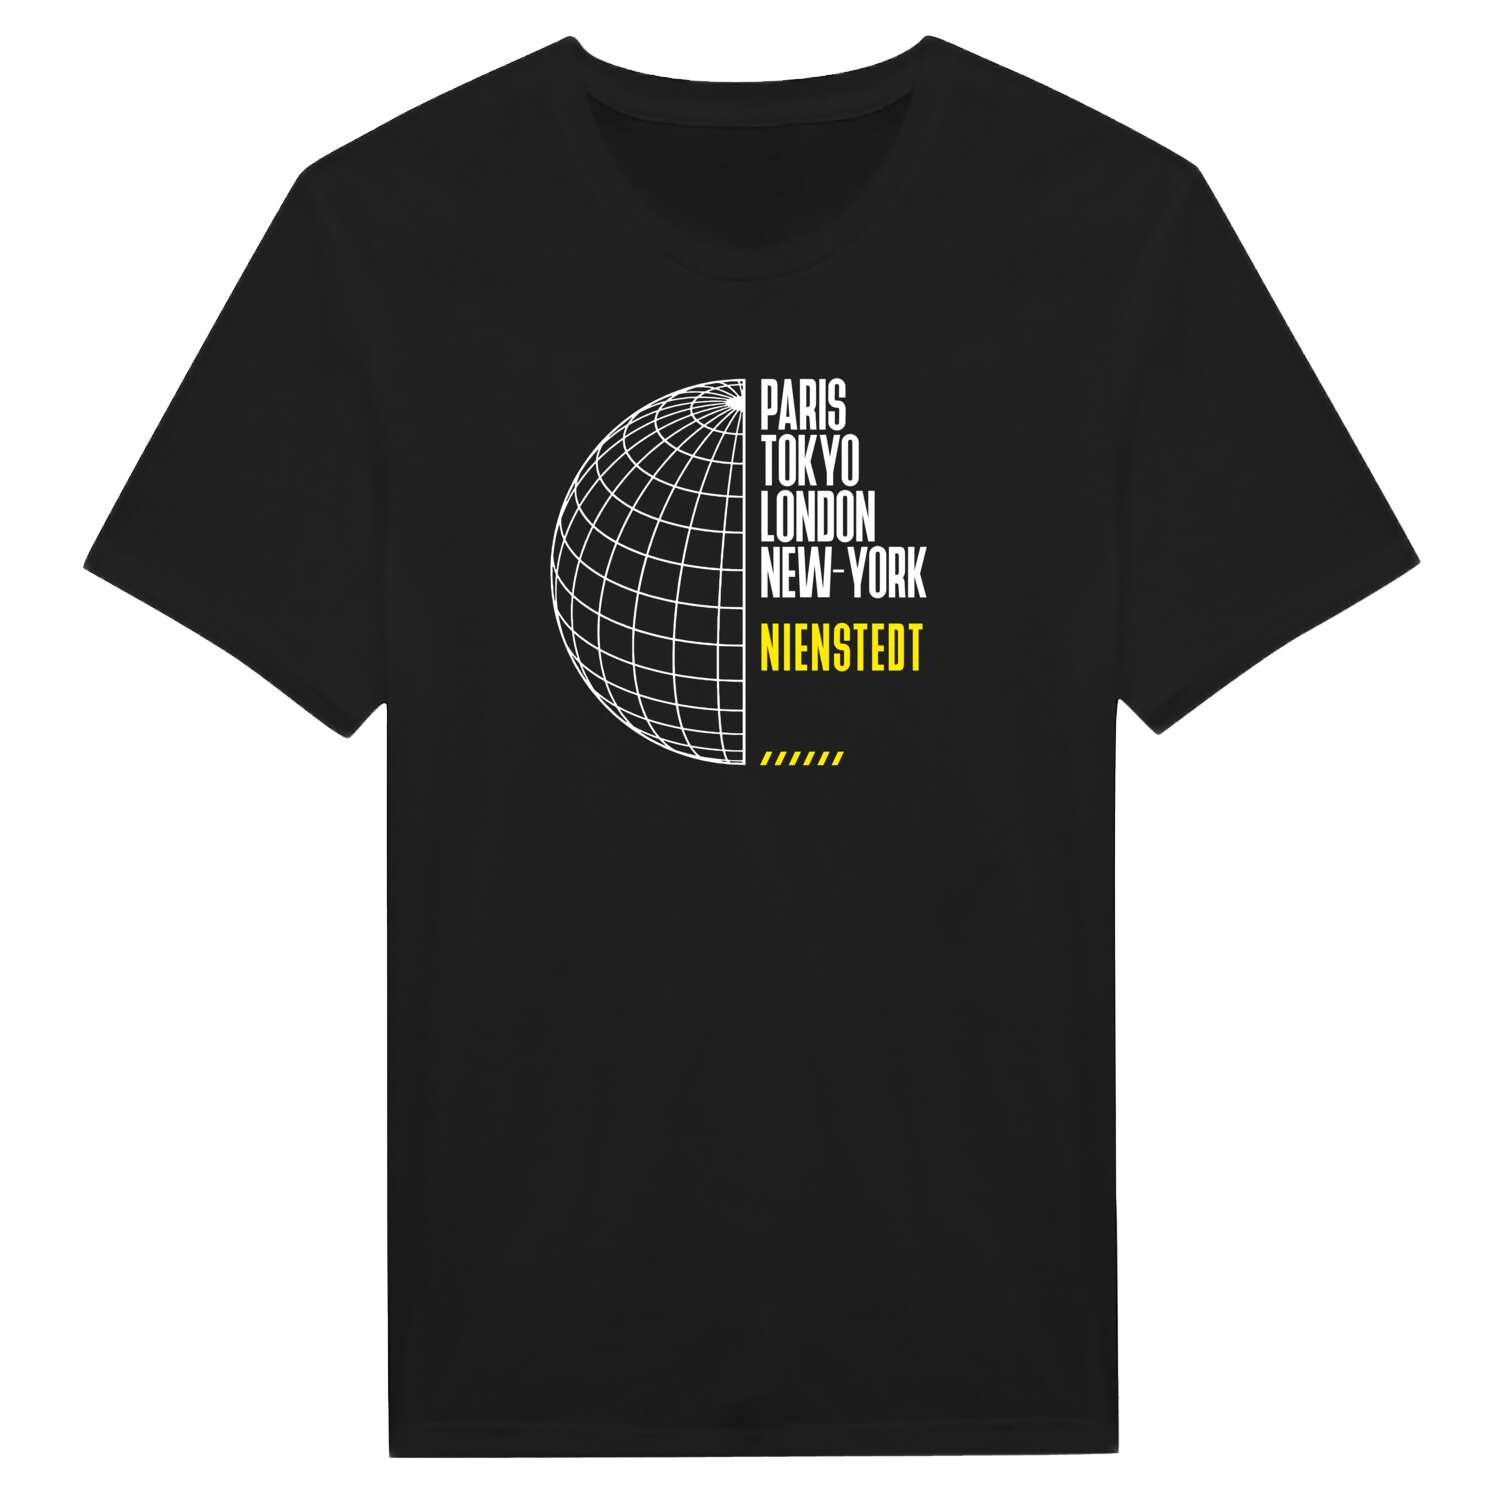 Nienstedt T-Shirt »Paris Tokyo London«